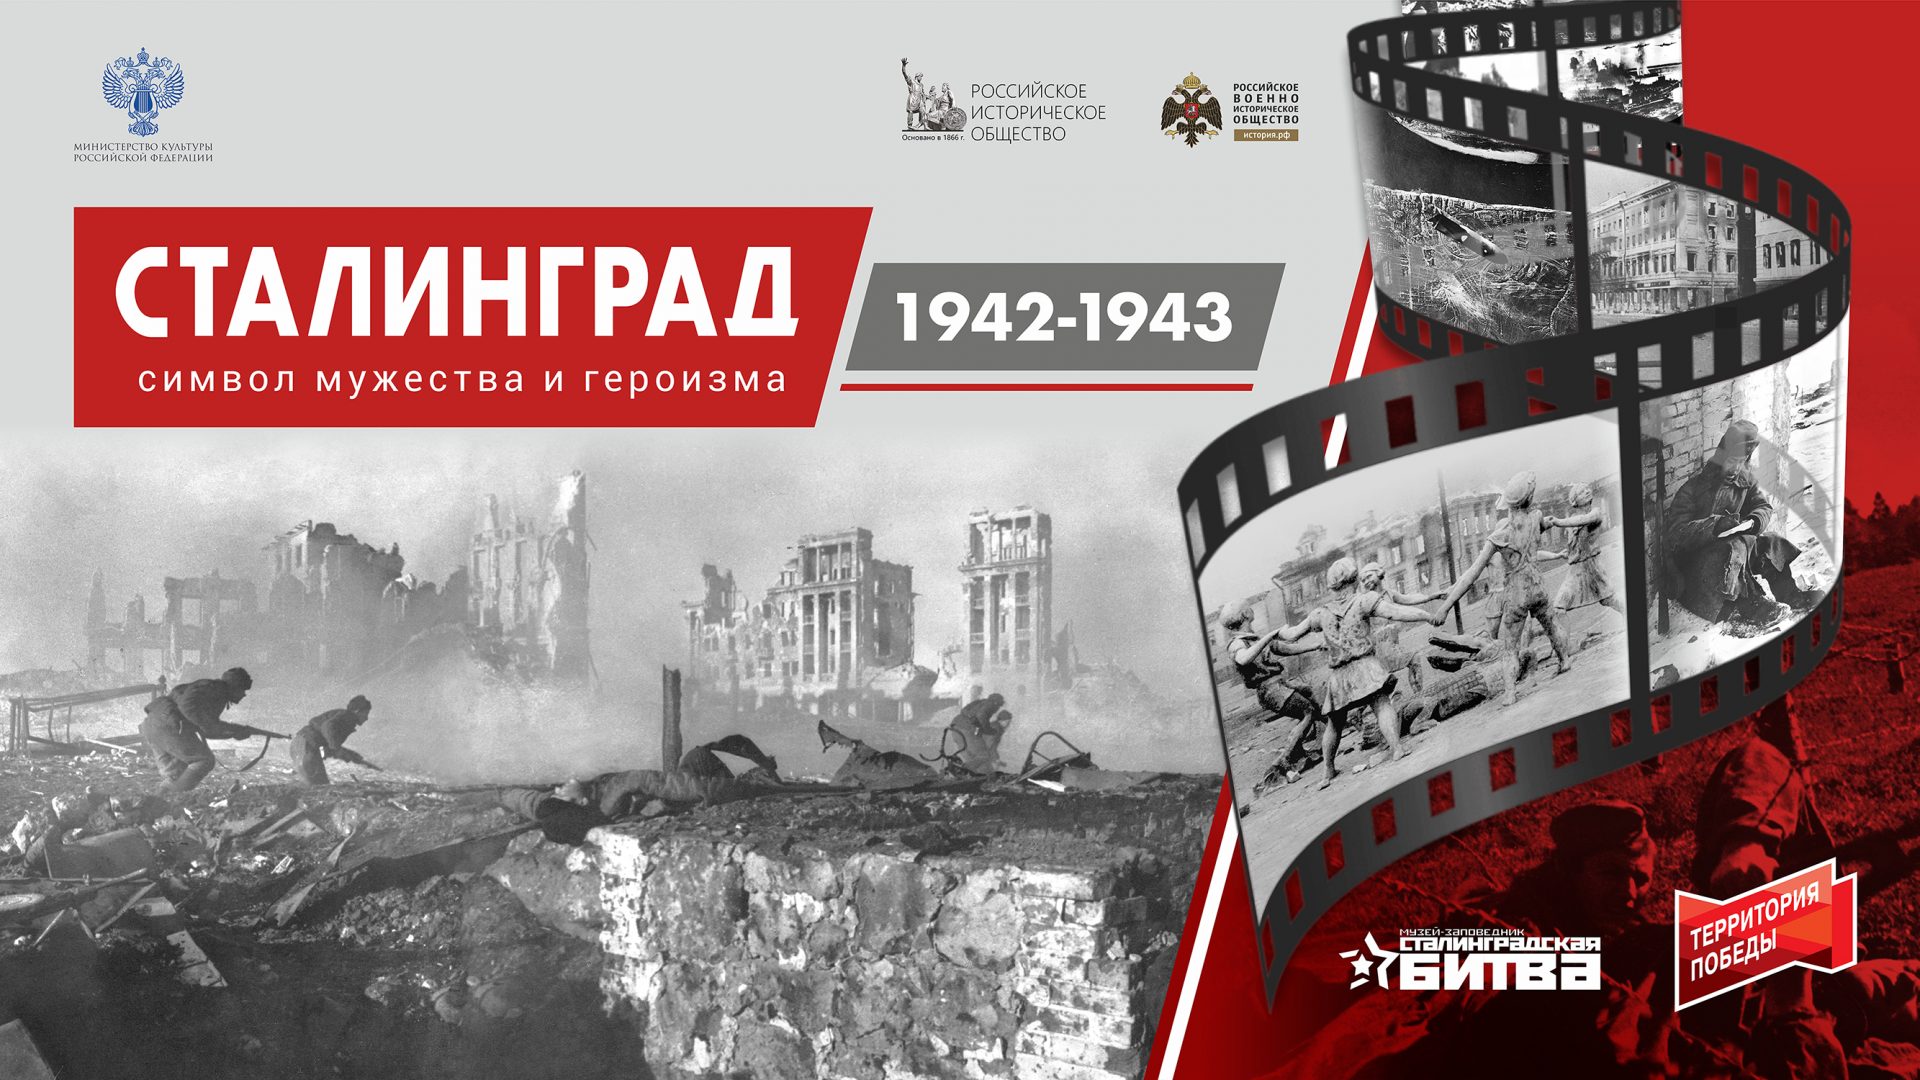 Мультимедийный выставочный проект «Сталинград 1942-1943»